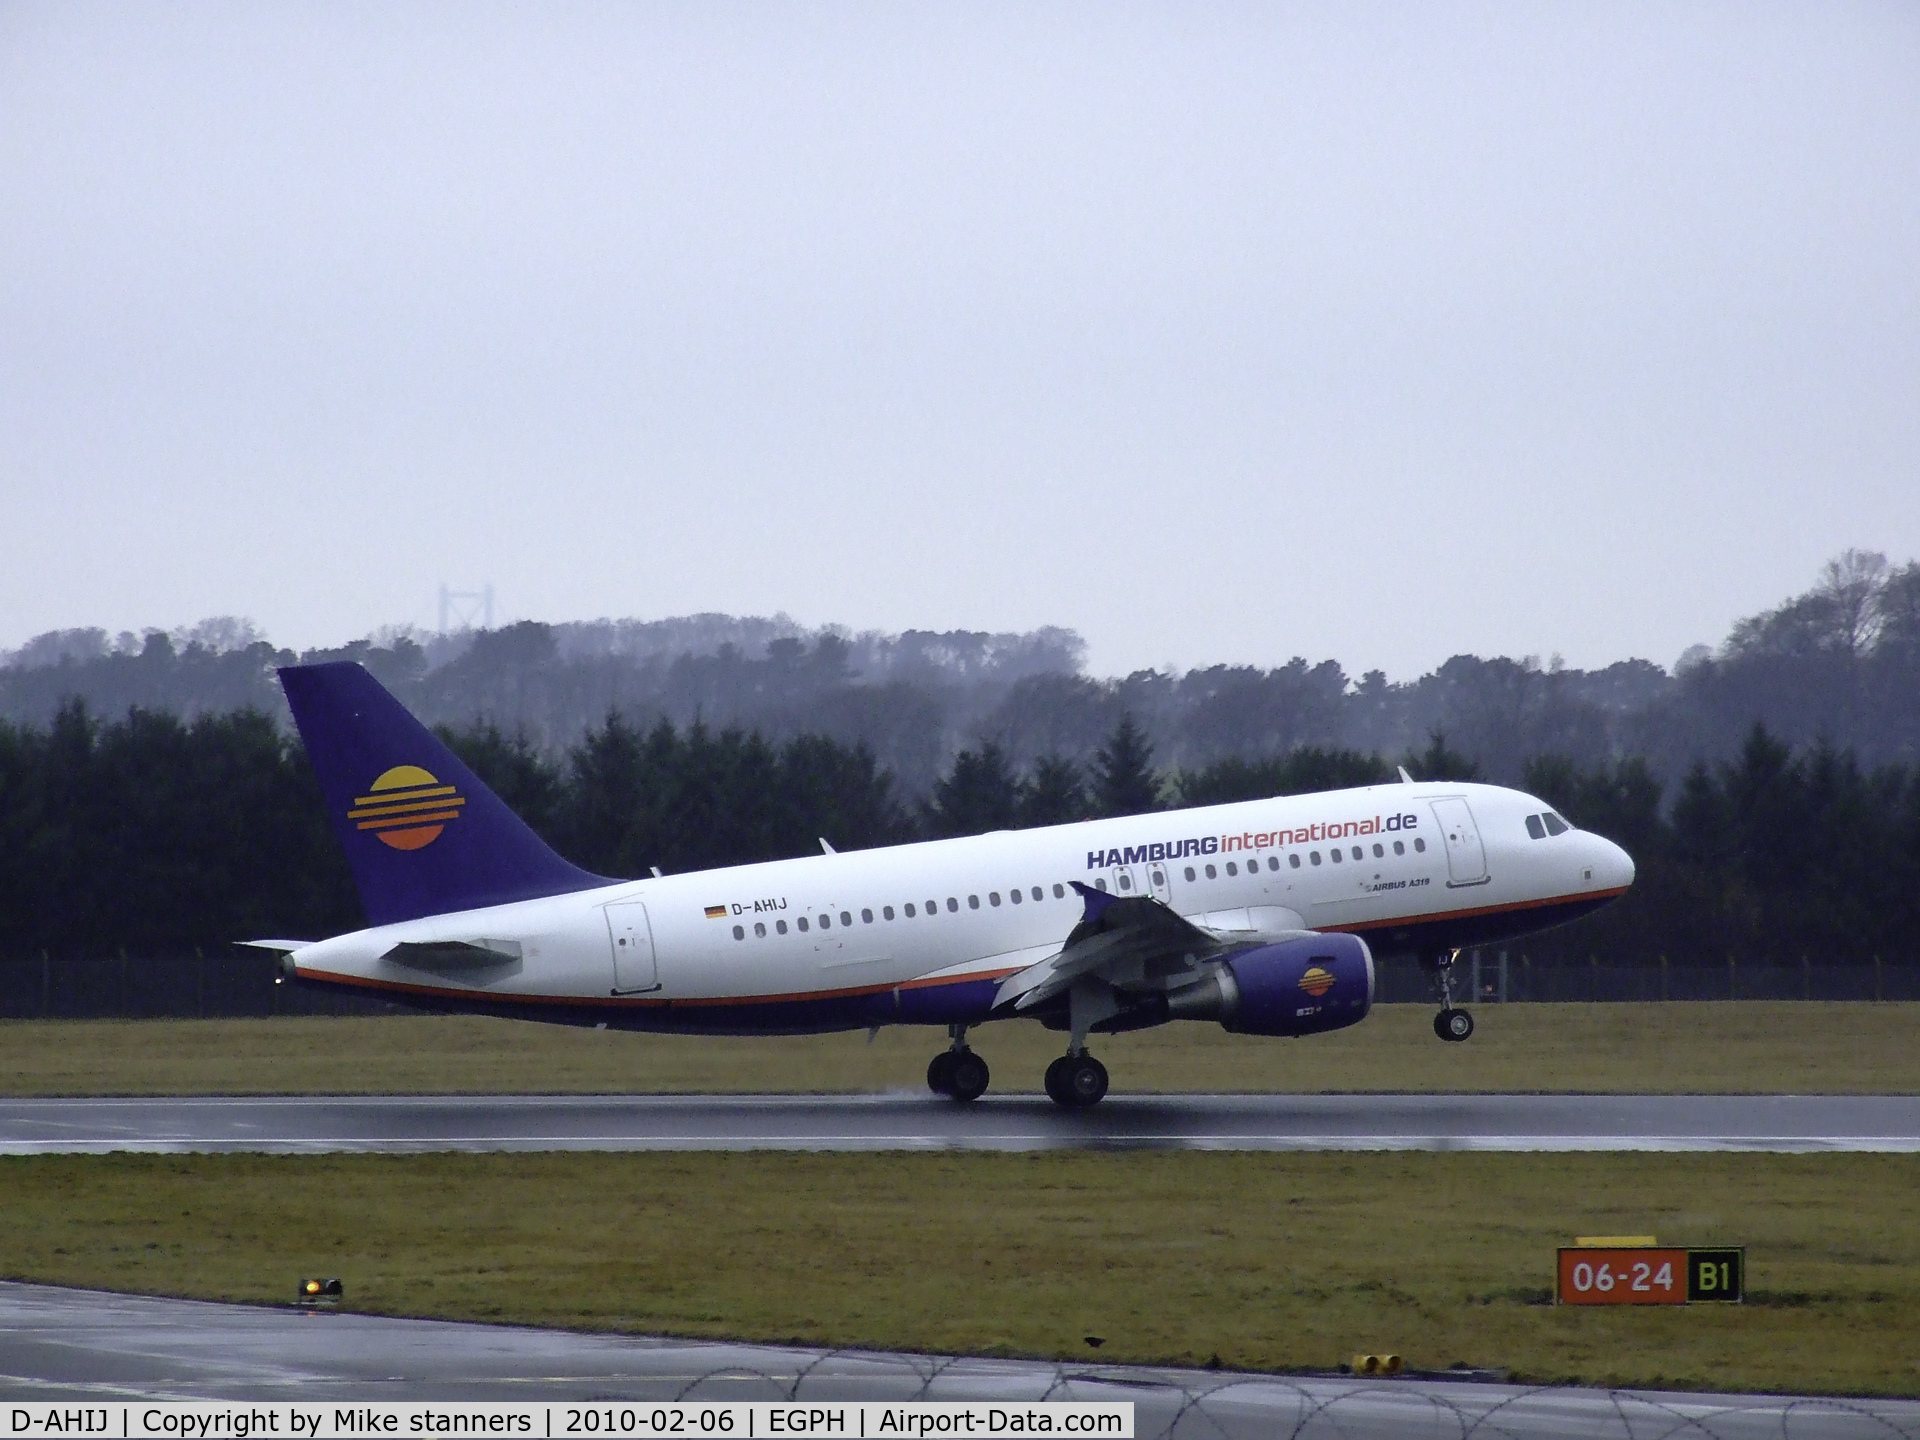 D-AHIJ, 2008 Airbus A319-111 C/N 3533, Hamburg international A319 Touches down on runway 06